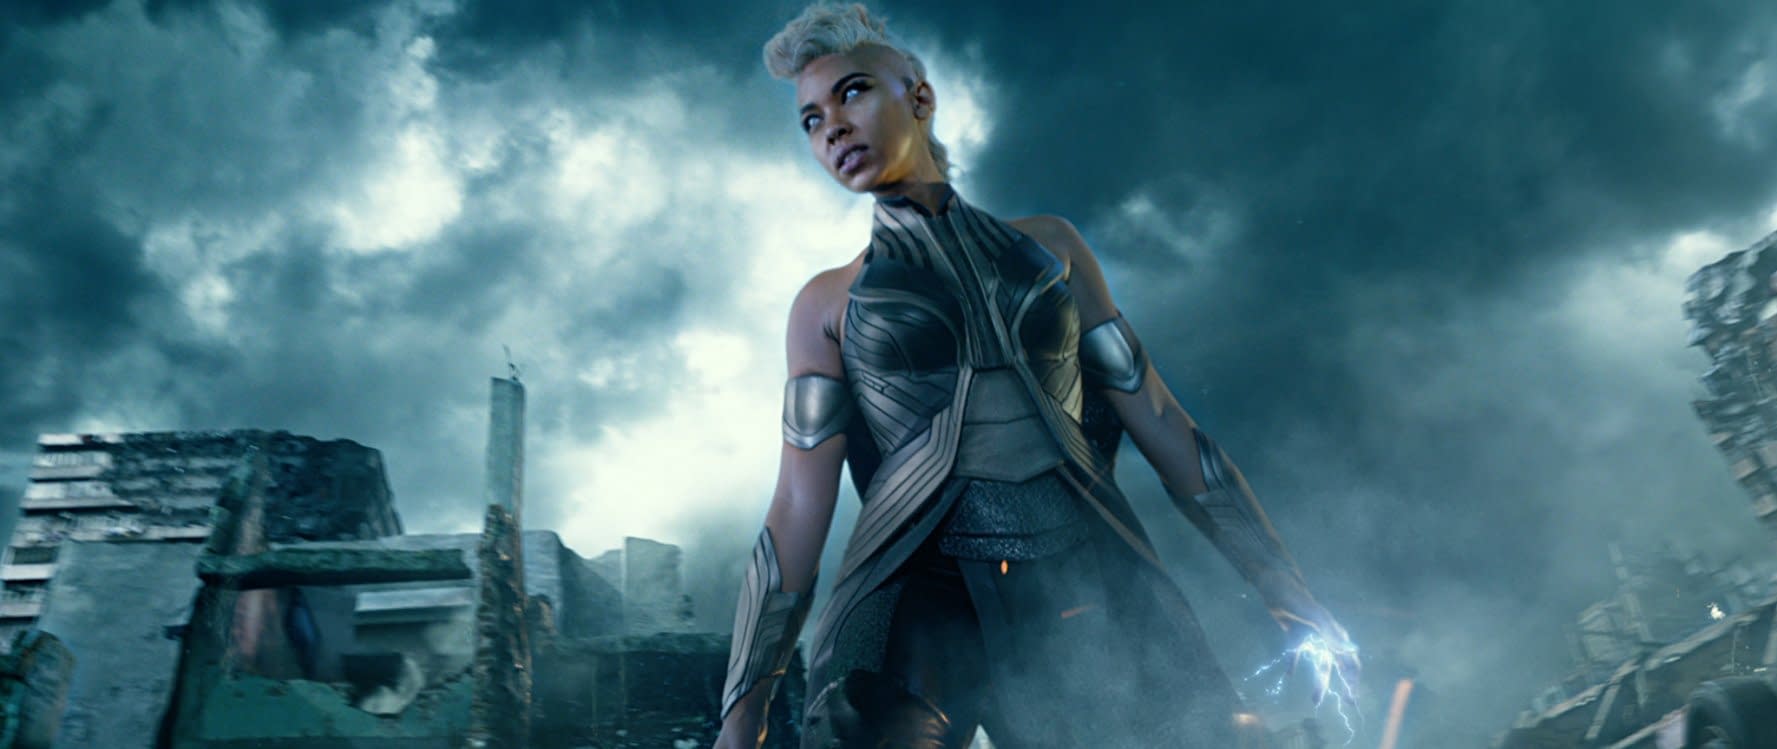 Alexandra Shipp As Storm In X-Men Dark Phoenix Wallpapers